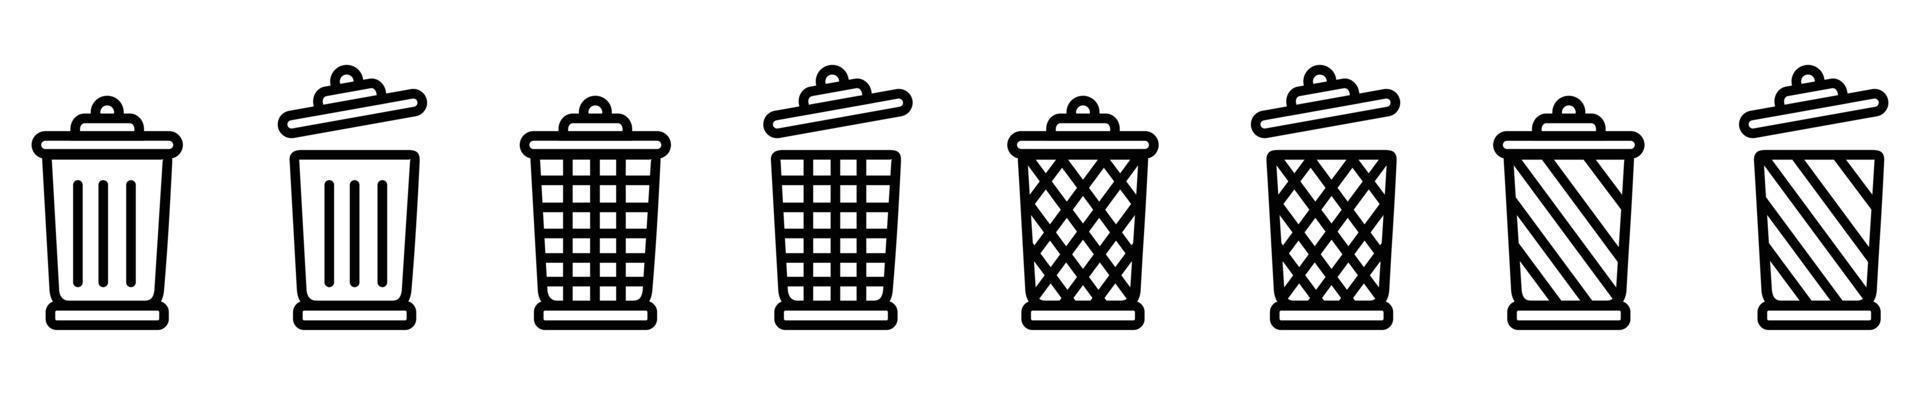 poubelle peut ouvrir la conception d'illustration vectorielle d'icône, jeu d'icônes collecte des ordures ou des ordures. vecteur